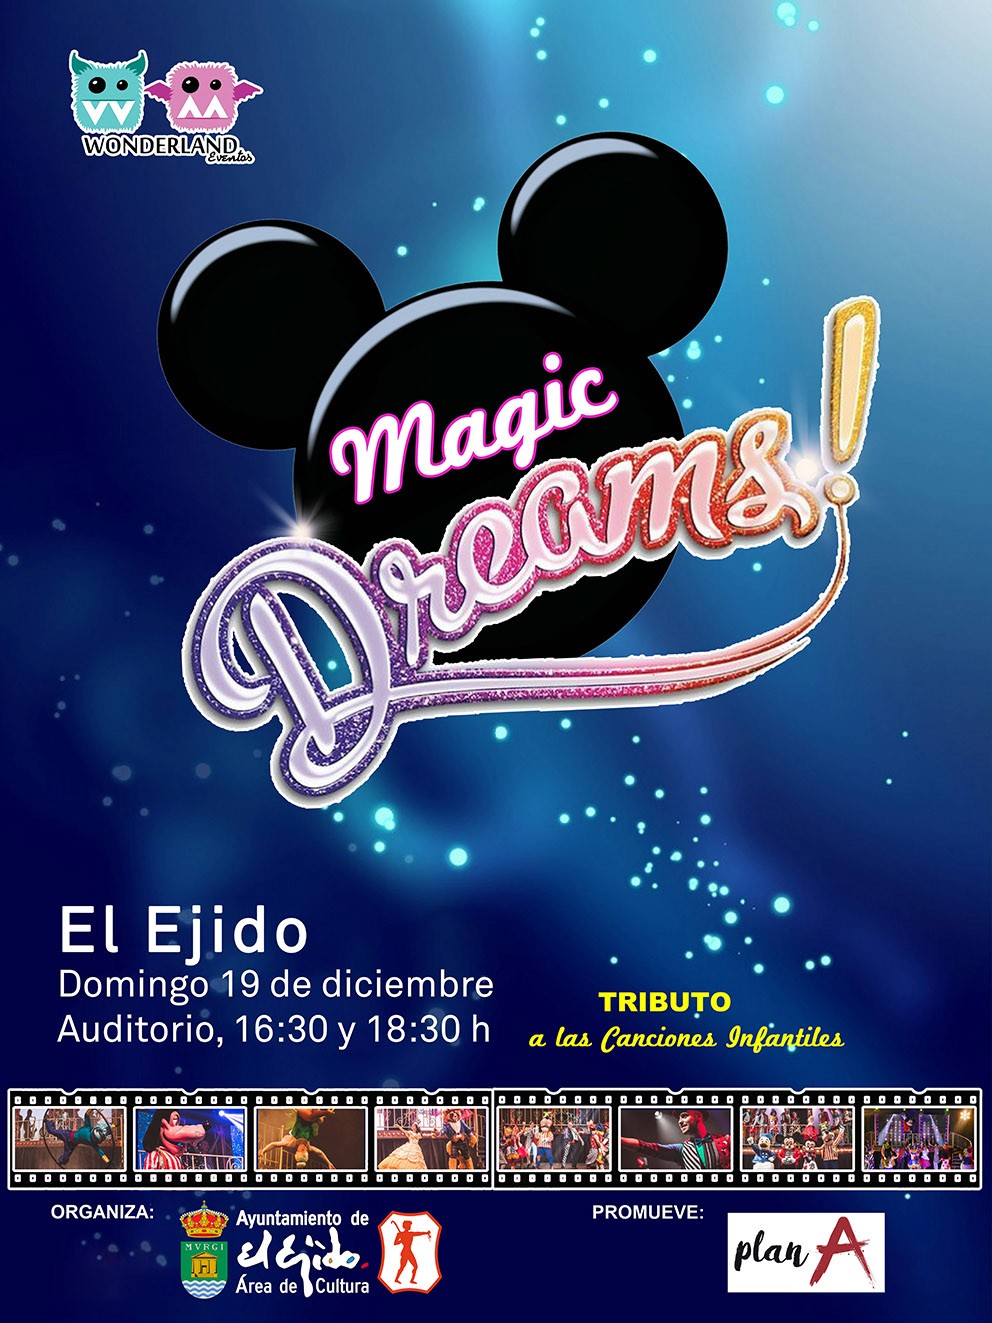 El musical Magic Dreams llenará este domingo de luz y color el Auditorio de El Ejido con los personajes de Disney